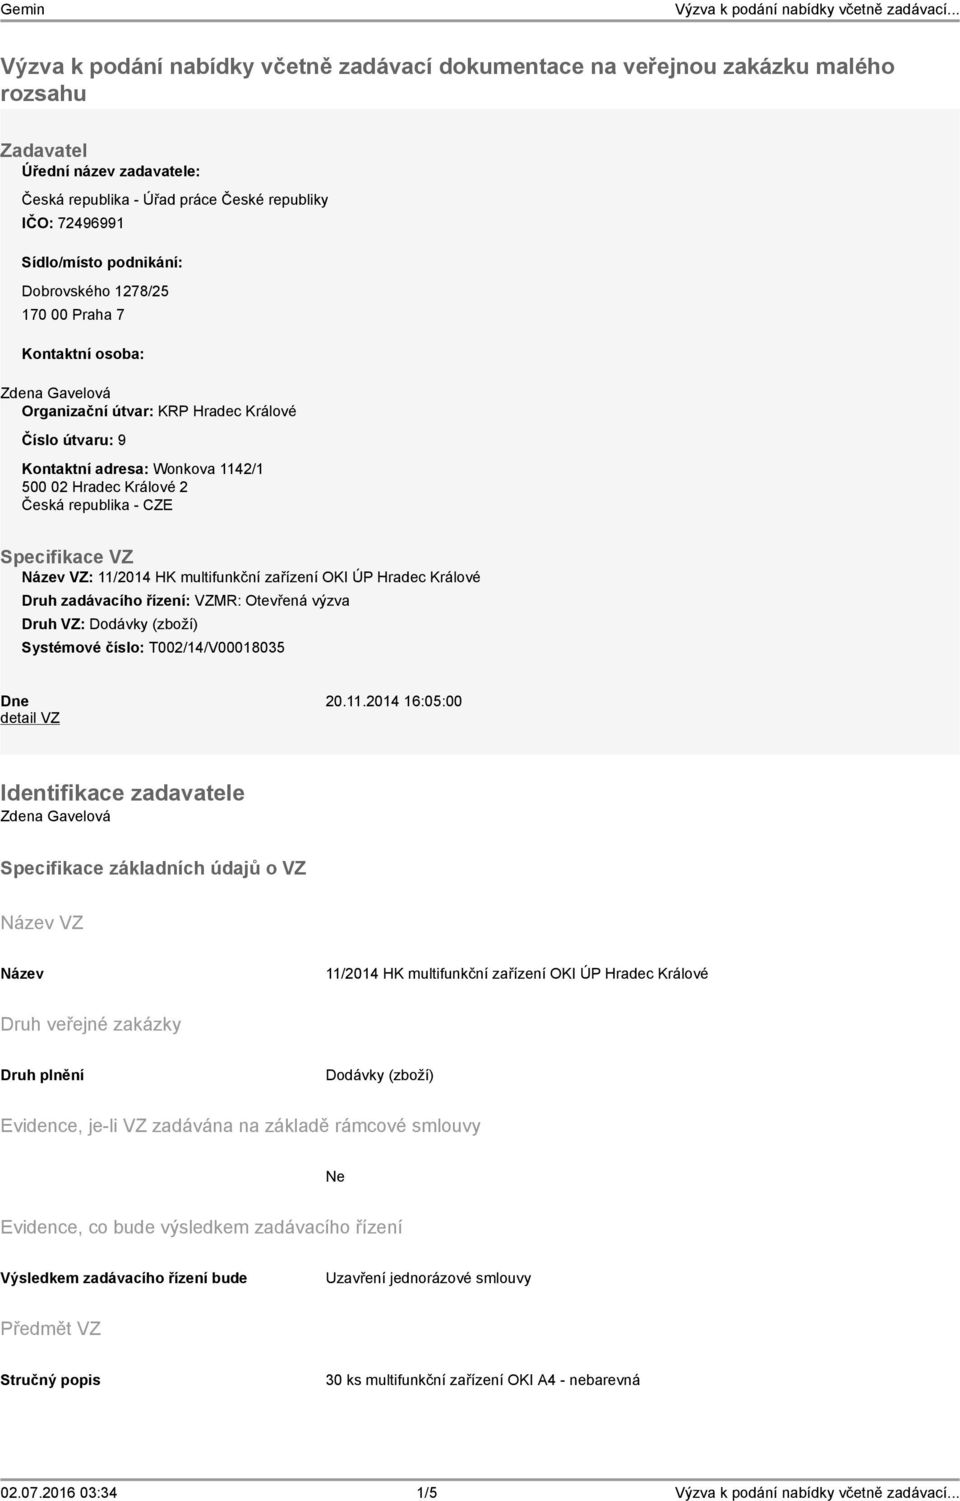 republika - CZE Specifikace VZ VZ: 11/2014 HK multifunkční zařízení OKI ÚP Hradec Králové Druh zadávacího řízení: VZMR: Otevřená výzva Druh VZ: Dodávky (zboží) Systémové číslo: T002/14/V00018035 Dne